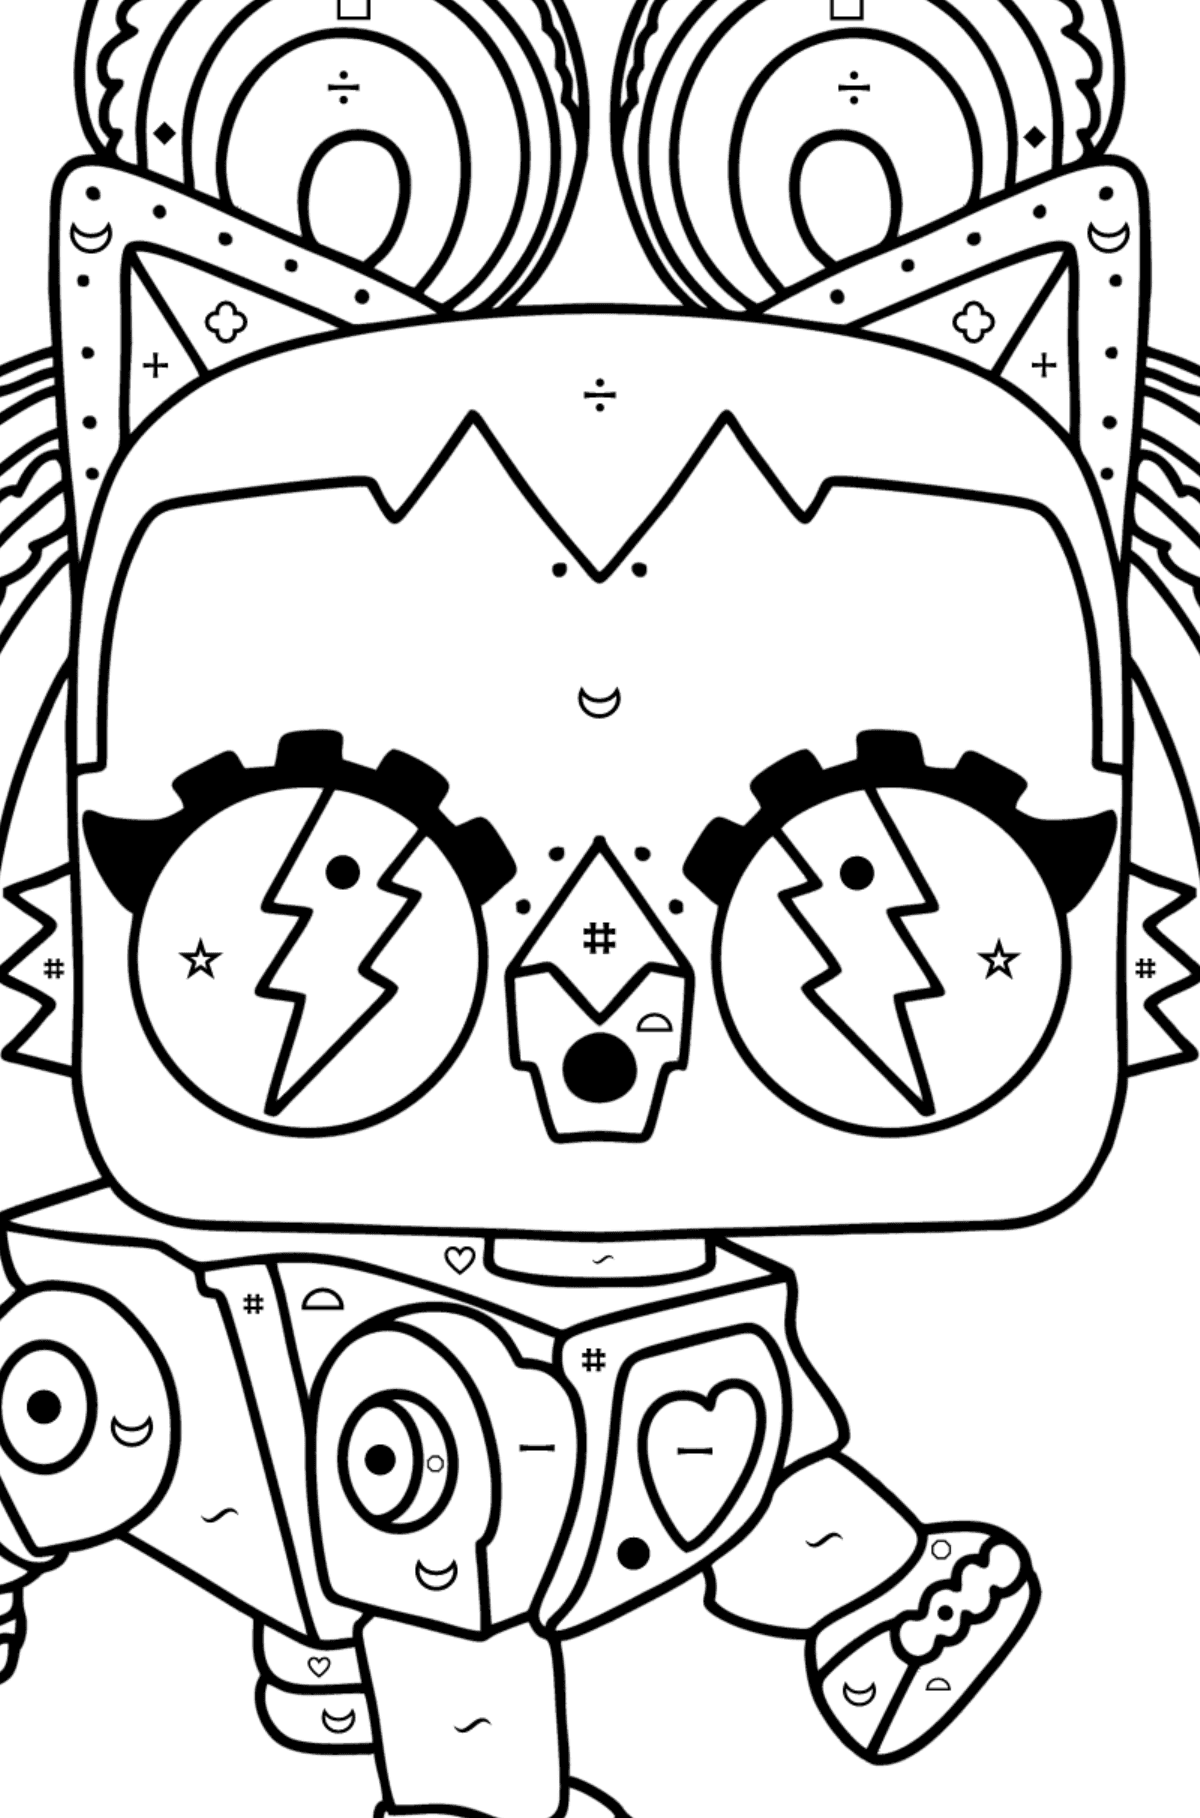 Disegno da colorare LOL Surprise Robo Kitty - Colorare per simboli e forme geometriche per bambini